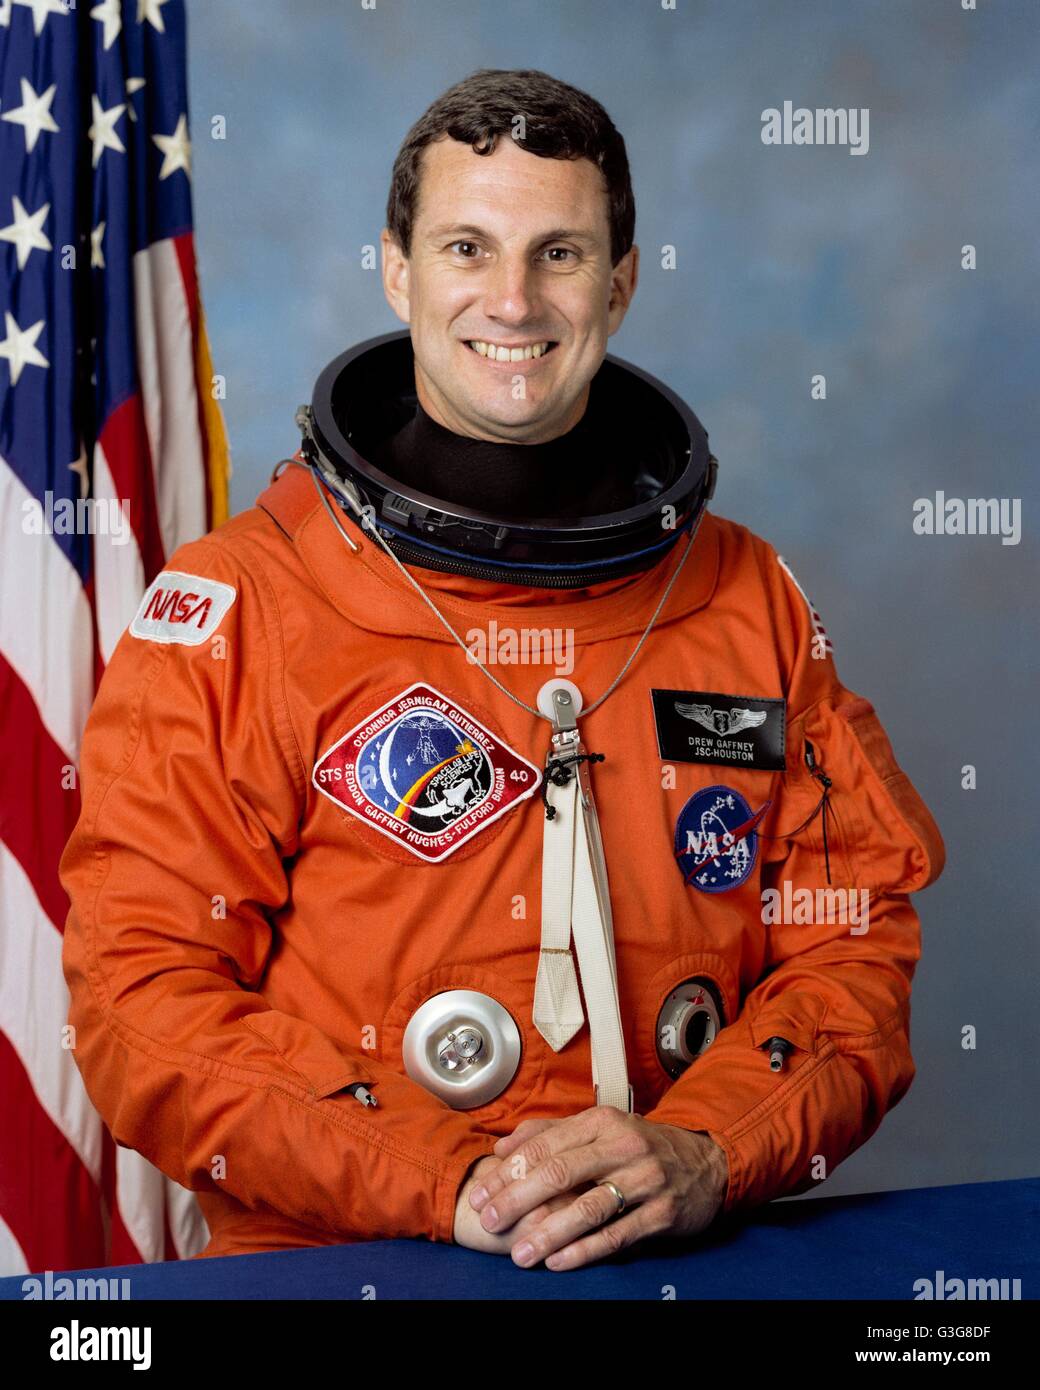 Astronauta statunitense il dott. Francesco trasse Gaffney ritratto in arancione tuta di pressione presso il Johnson Space Center Luglio 6, 1990 a Houston, Texas. Gaffney volò come un payload specialist su Space Shuttle STS-40 Spacelab Scienze della vita della missione, la prima missione shuttle dedicata alla ricerca biomedica. Foto Stock